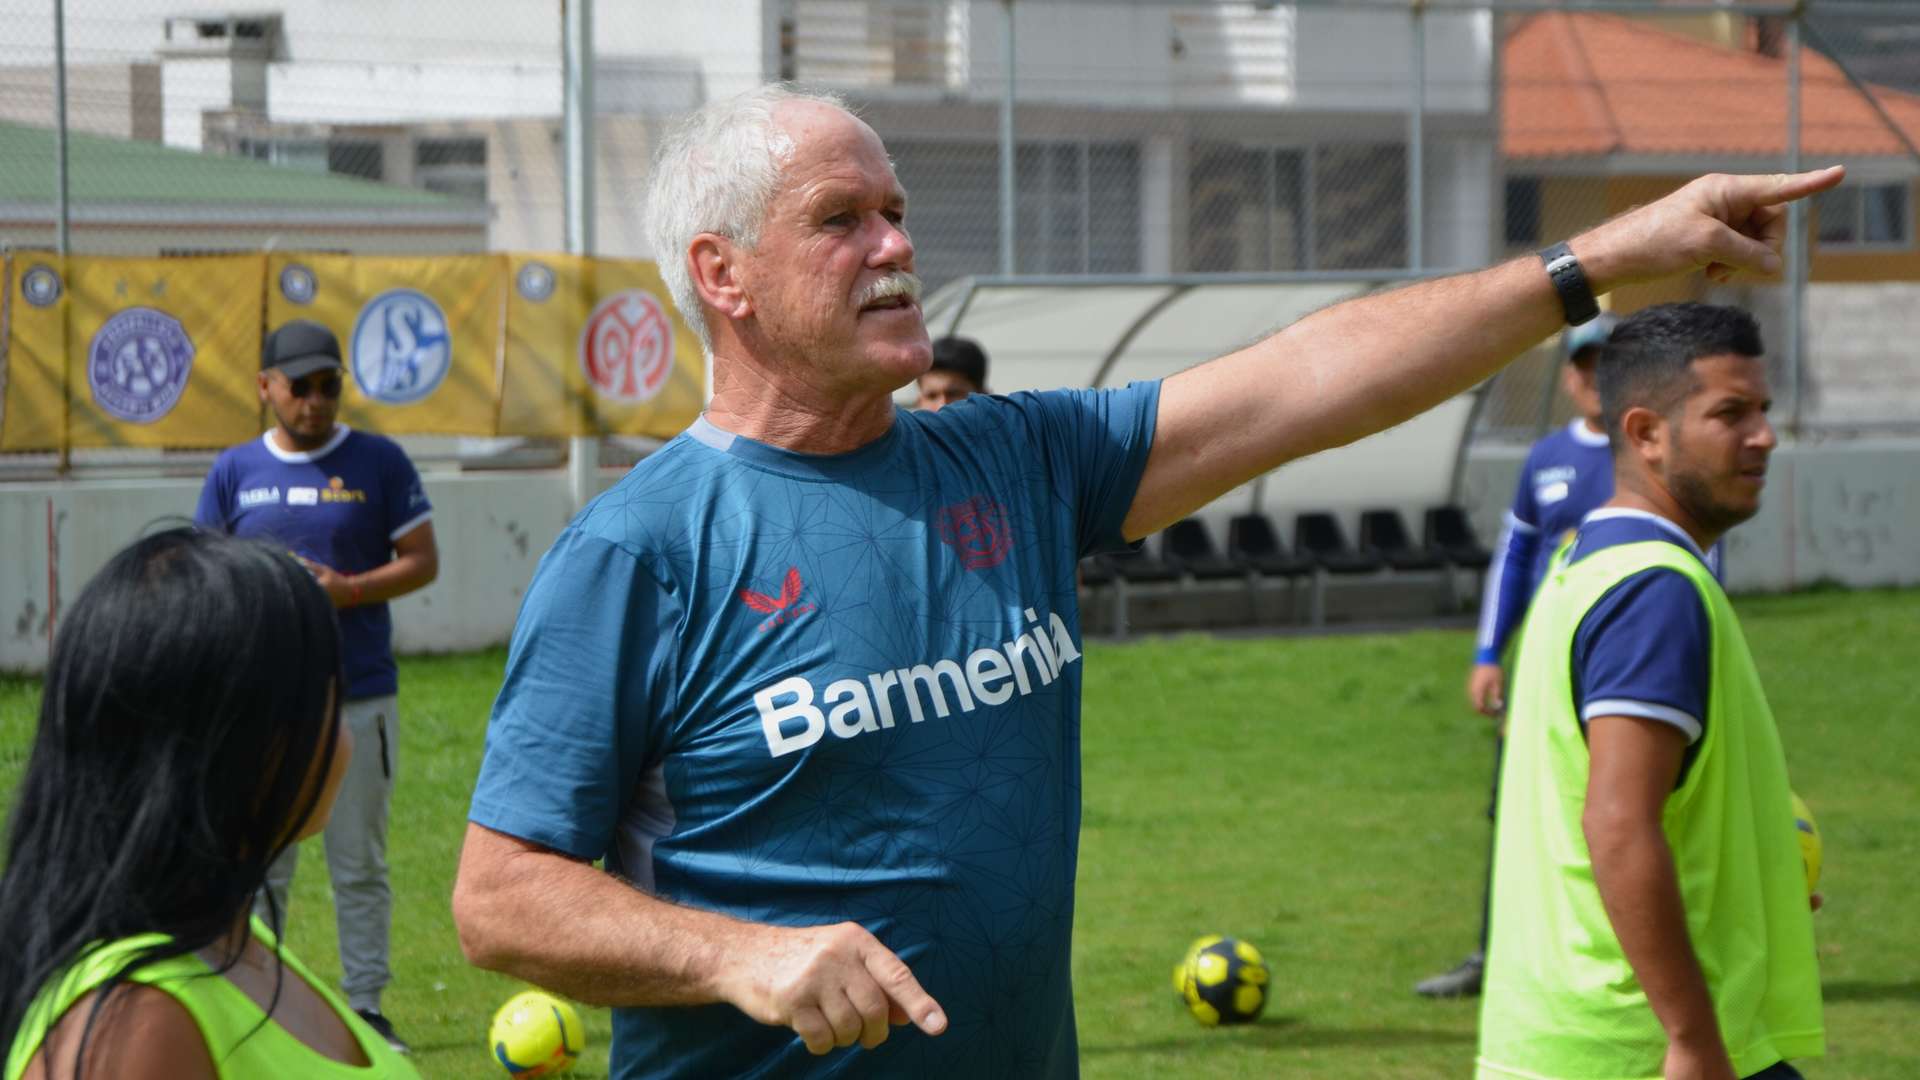 Young Coaches-Ausbildung in Ecuador